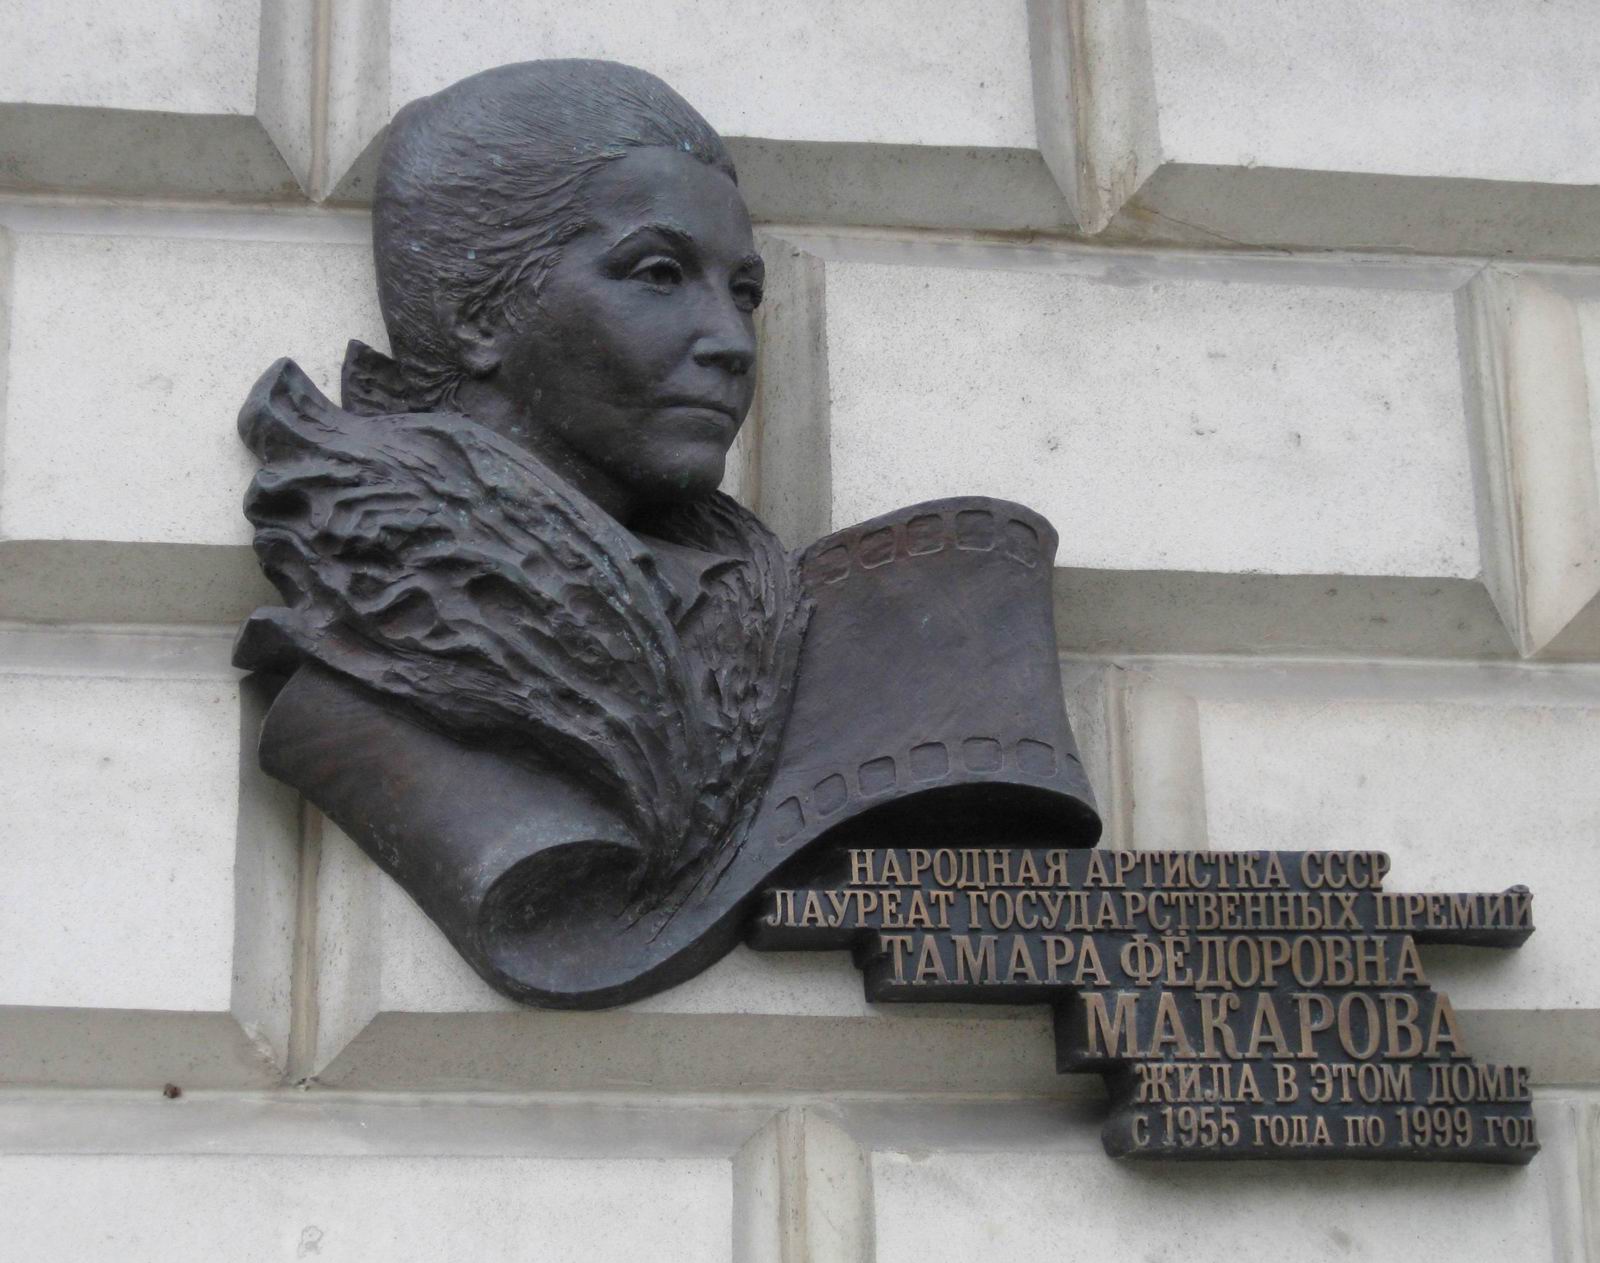 Мемориальная доска Макаровой Т.Ф. (1907–1997), ск. И.Казанский, на Кутузовском проспекте, дом 2, открыта в июне 2009.